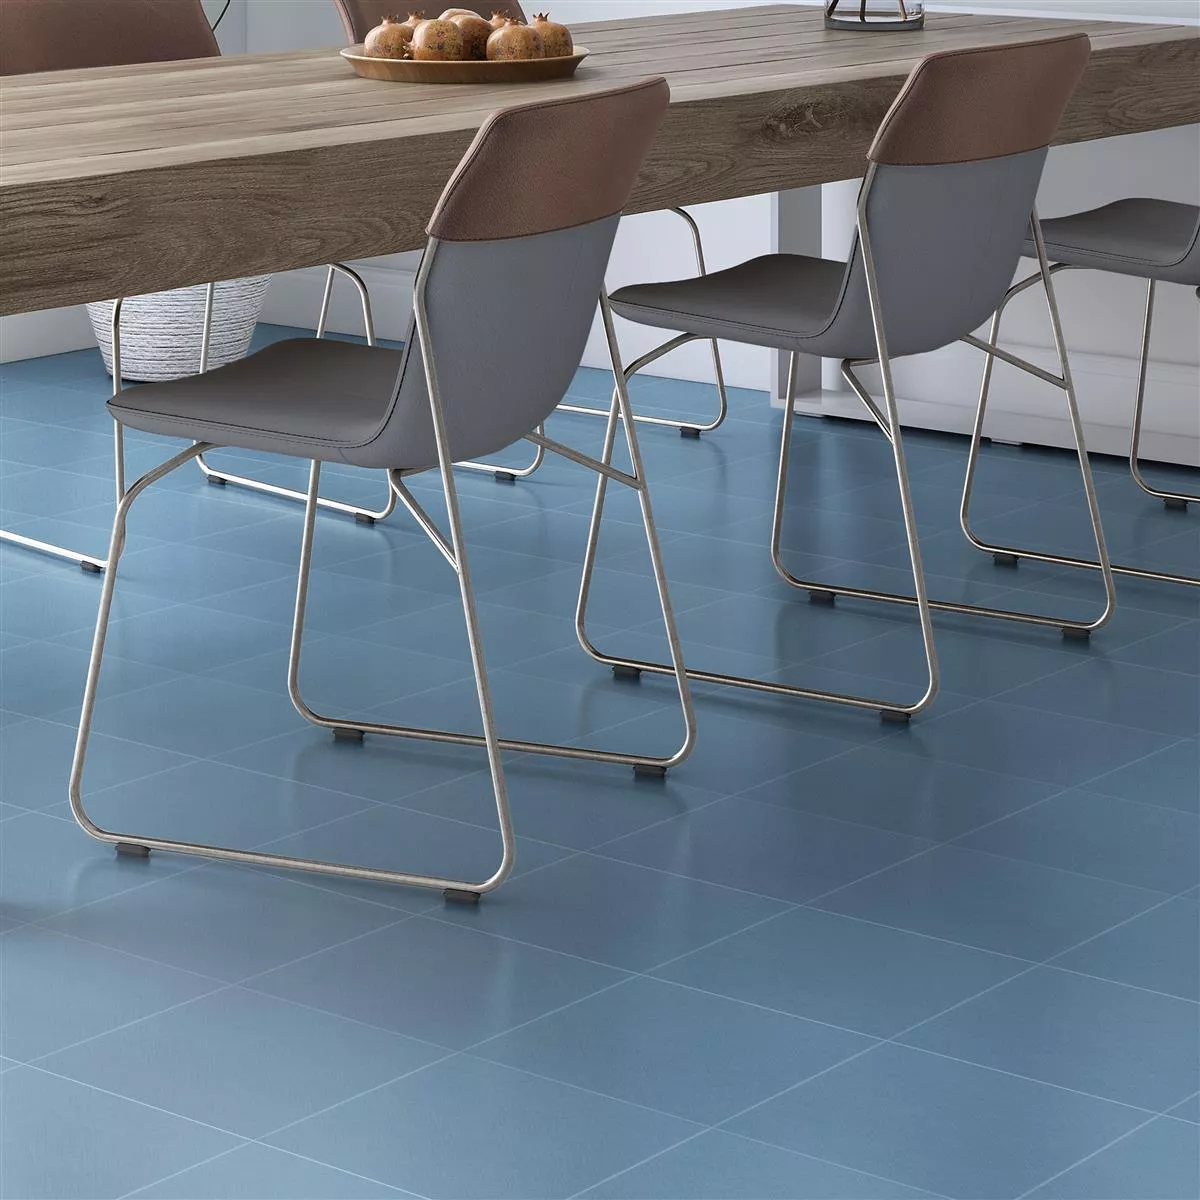 Sample Floor Tiles Cement Optic Wildflower Blue Basic Tile 18,5x18,5cm